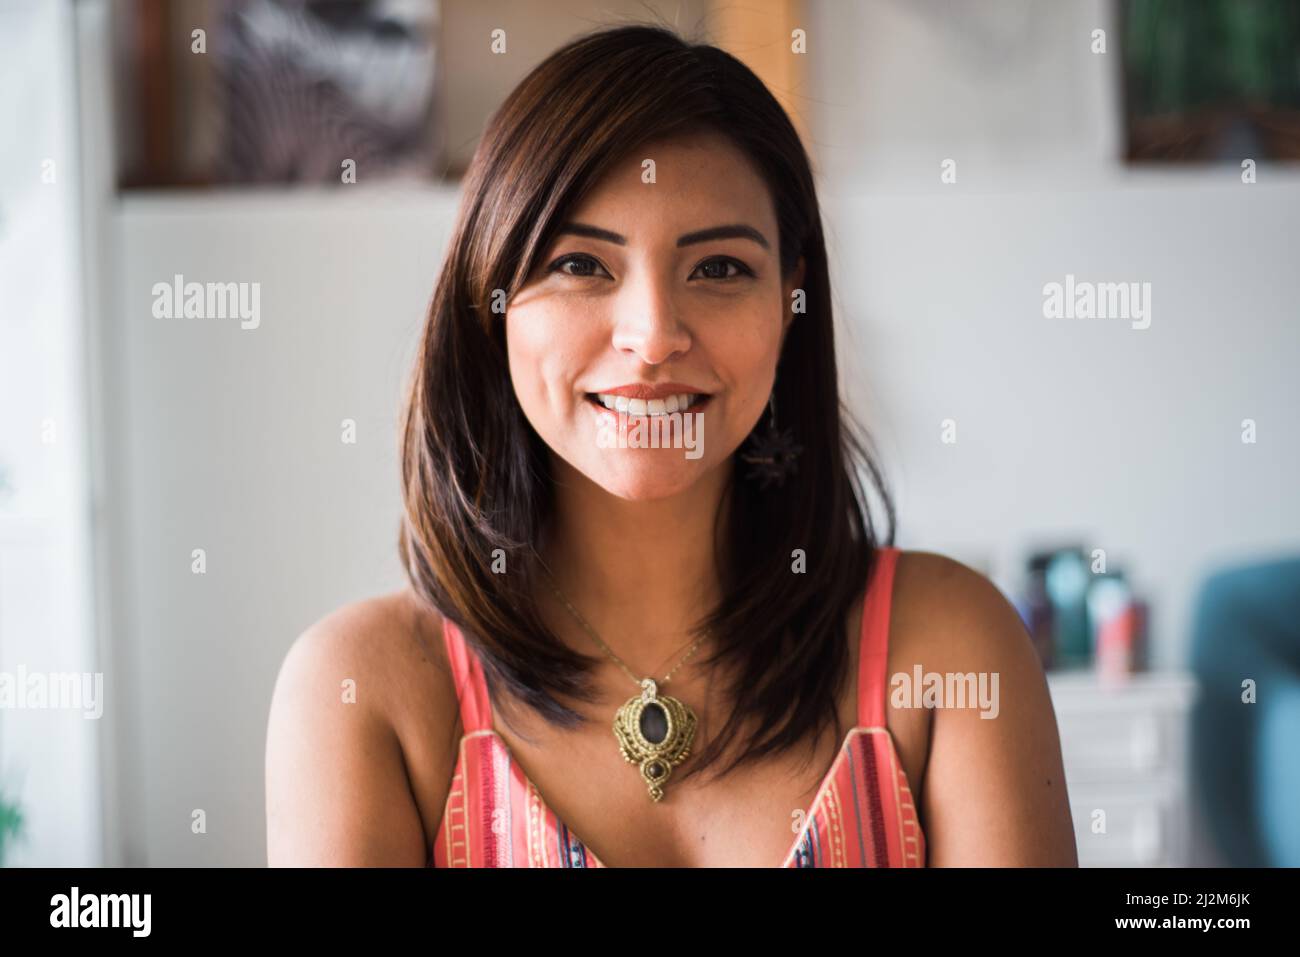 close-up of a smiling latina woman Stock Photo